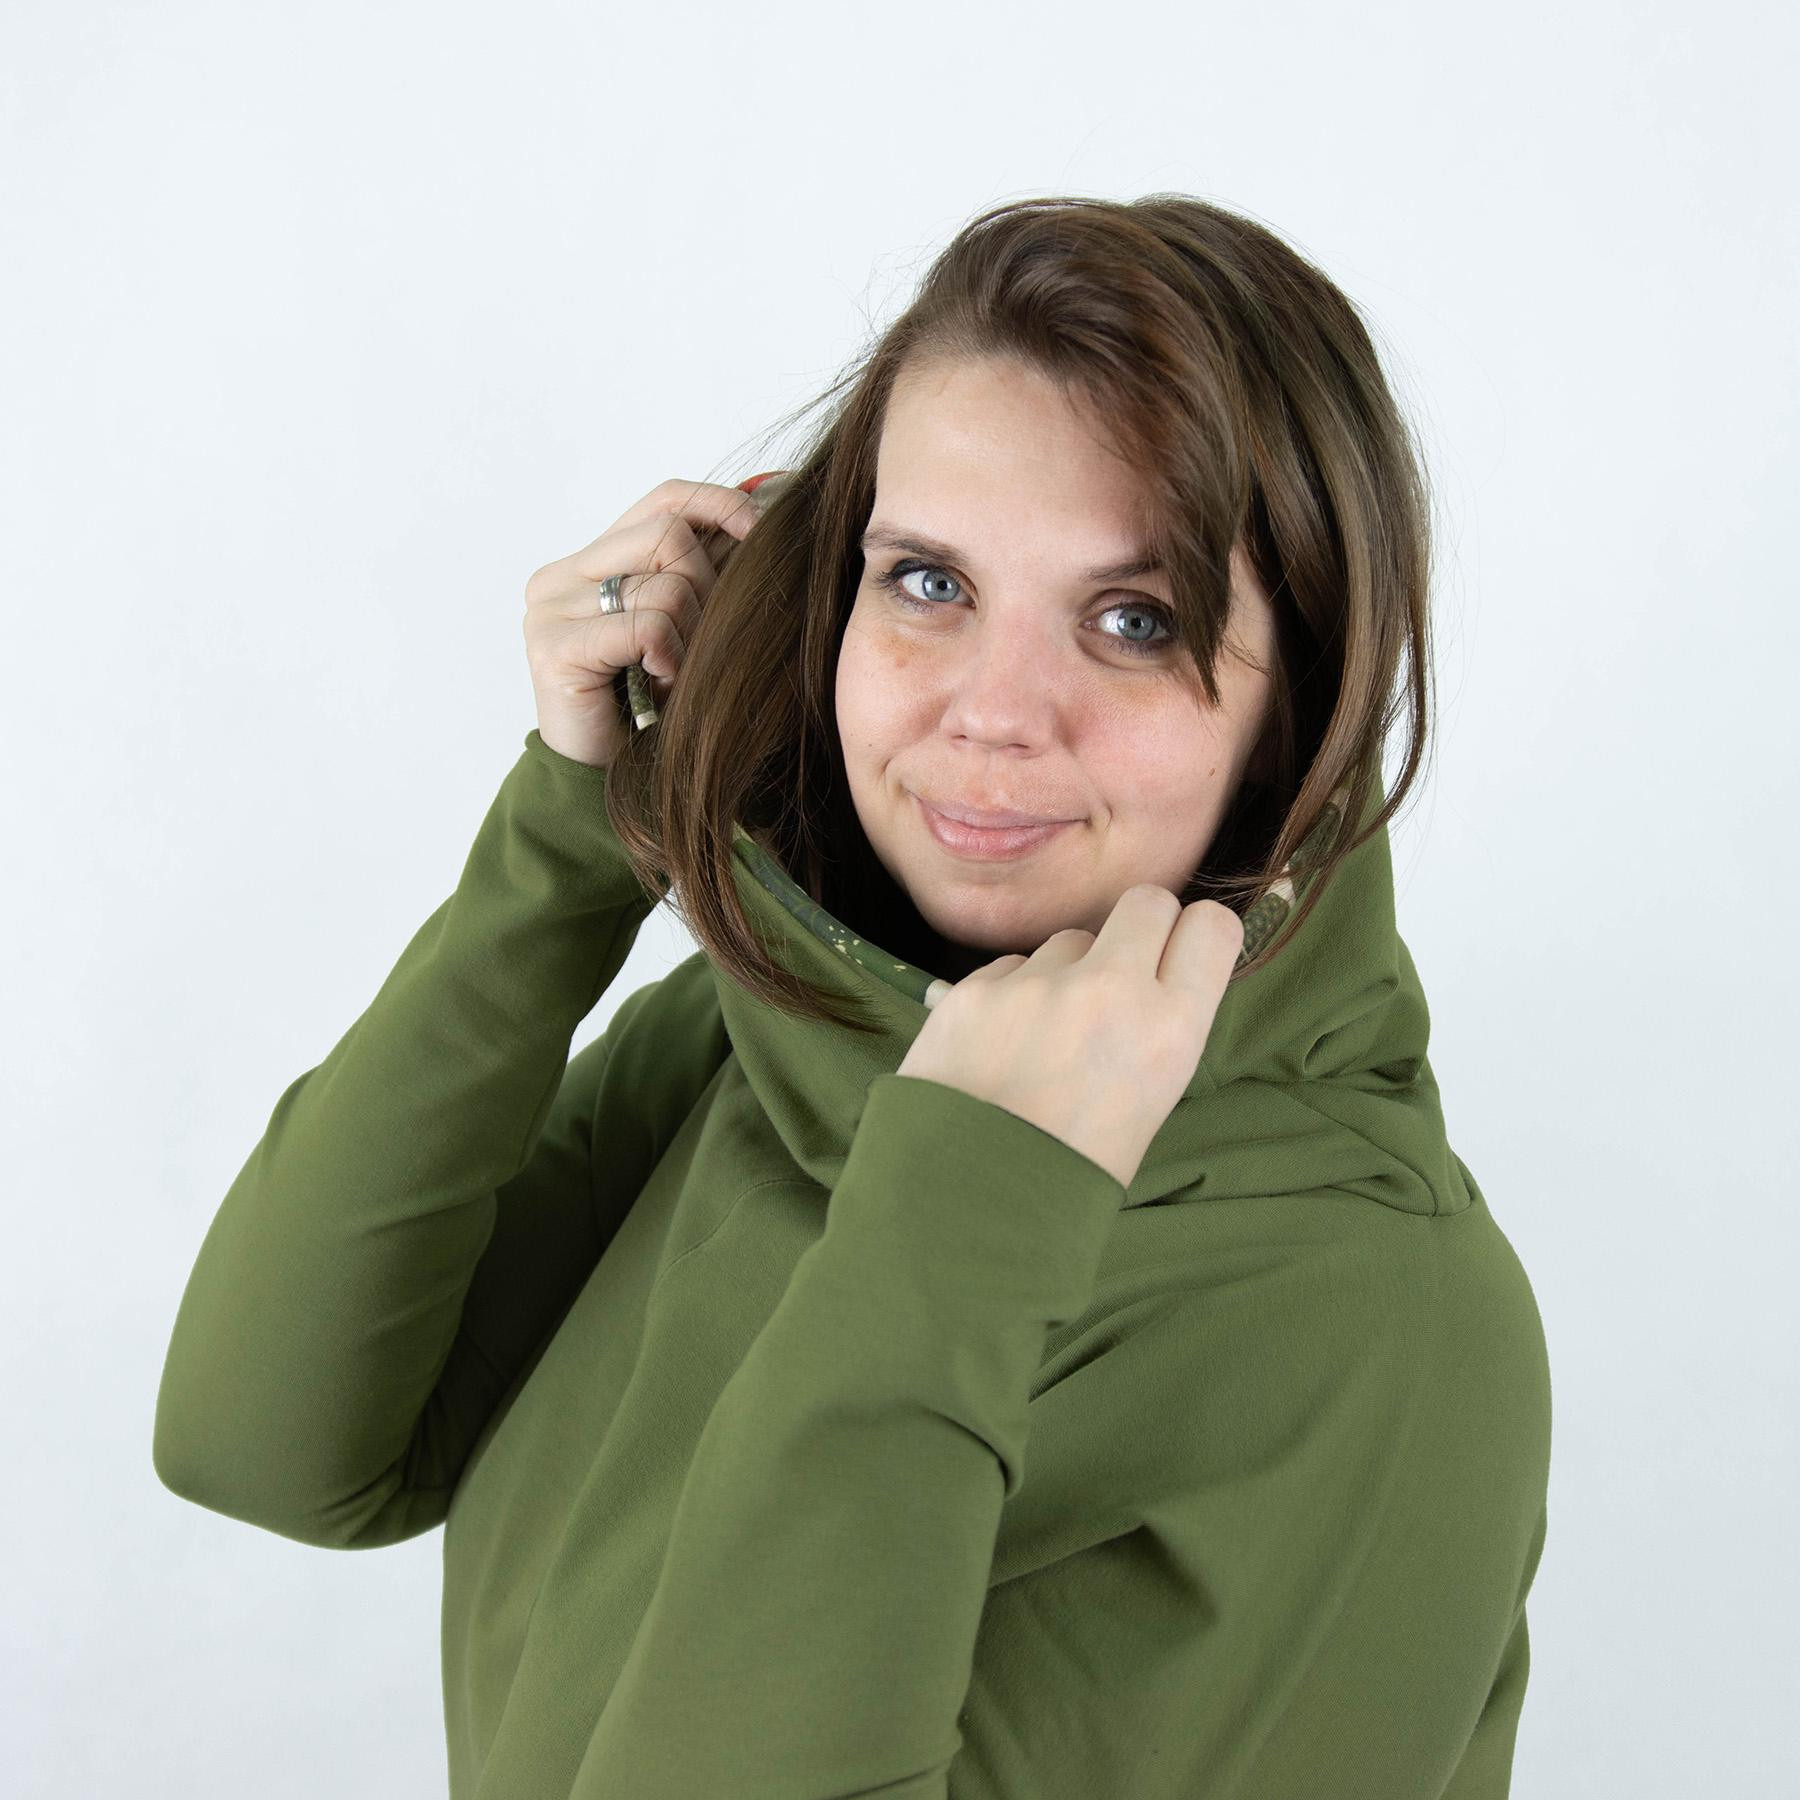 Sweatshirt mit Schalkragen und Fledermausärmel (FURIA) - ABSTRAKTION Ms. 4 - Sommersweat